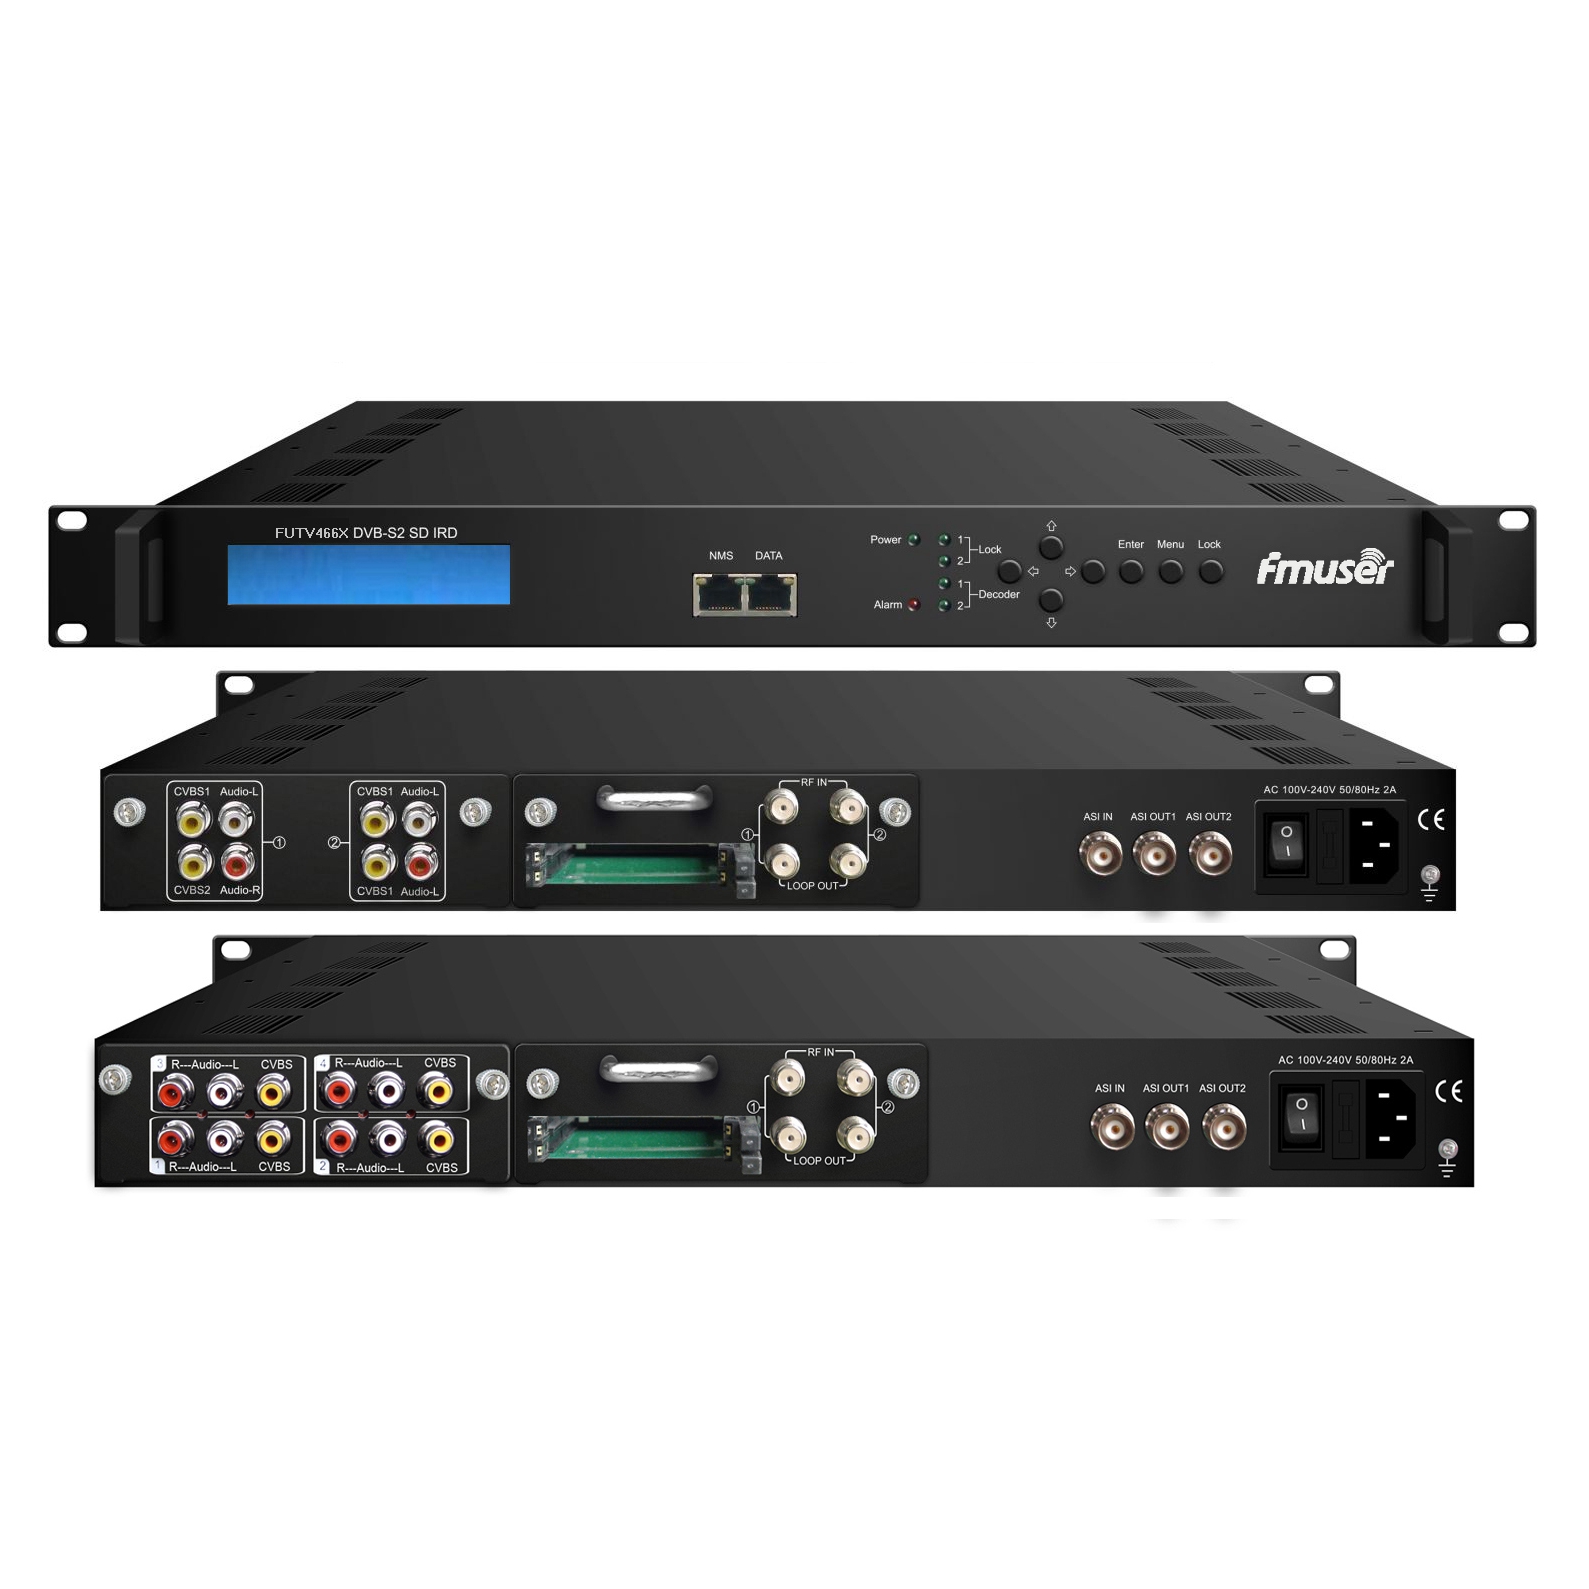 Bộ điều chỉnh FMUSER FUTV466X 2 CAM SD IRD (Đầu vào 2 DVB-C / T / S / S2 RF, IP 1 ASI, Đầu ra IP 2 ASI 1) với MUX